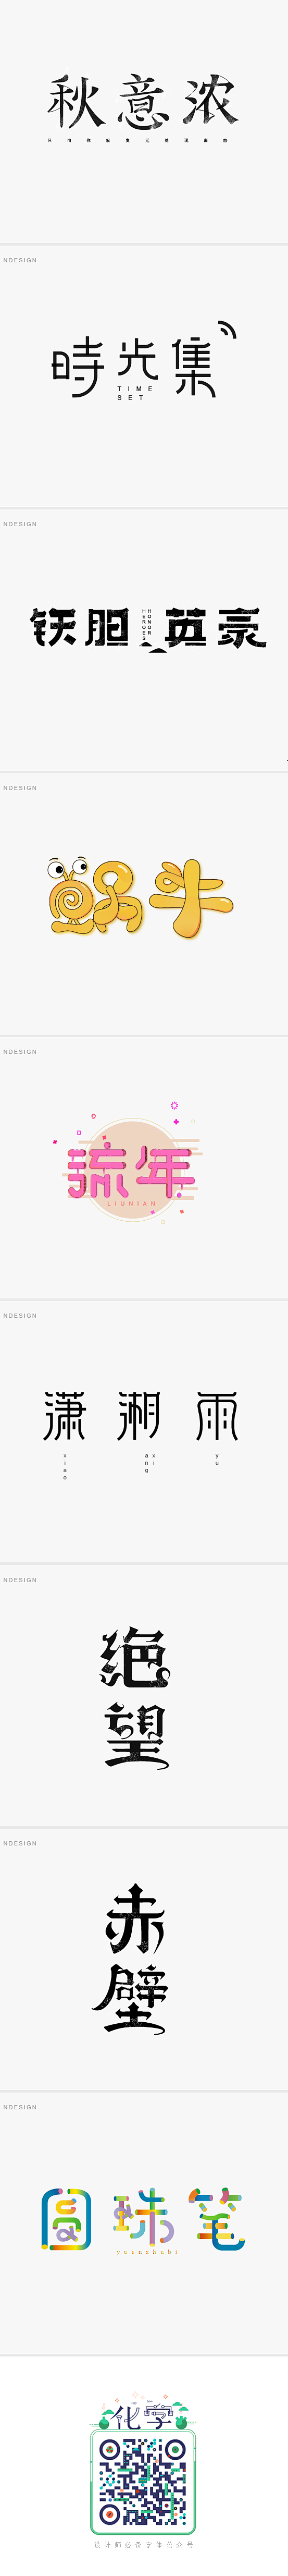 时光集_字体传奇网-中国首个字体品牌设计...